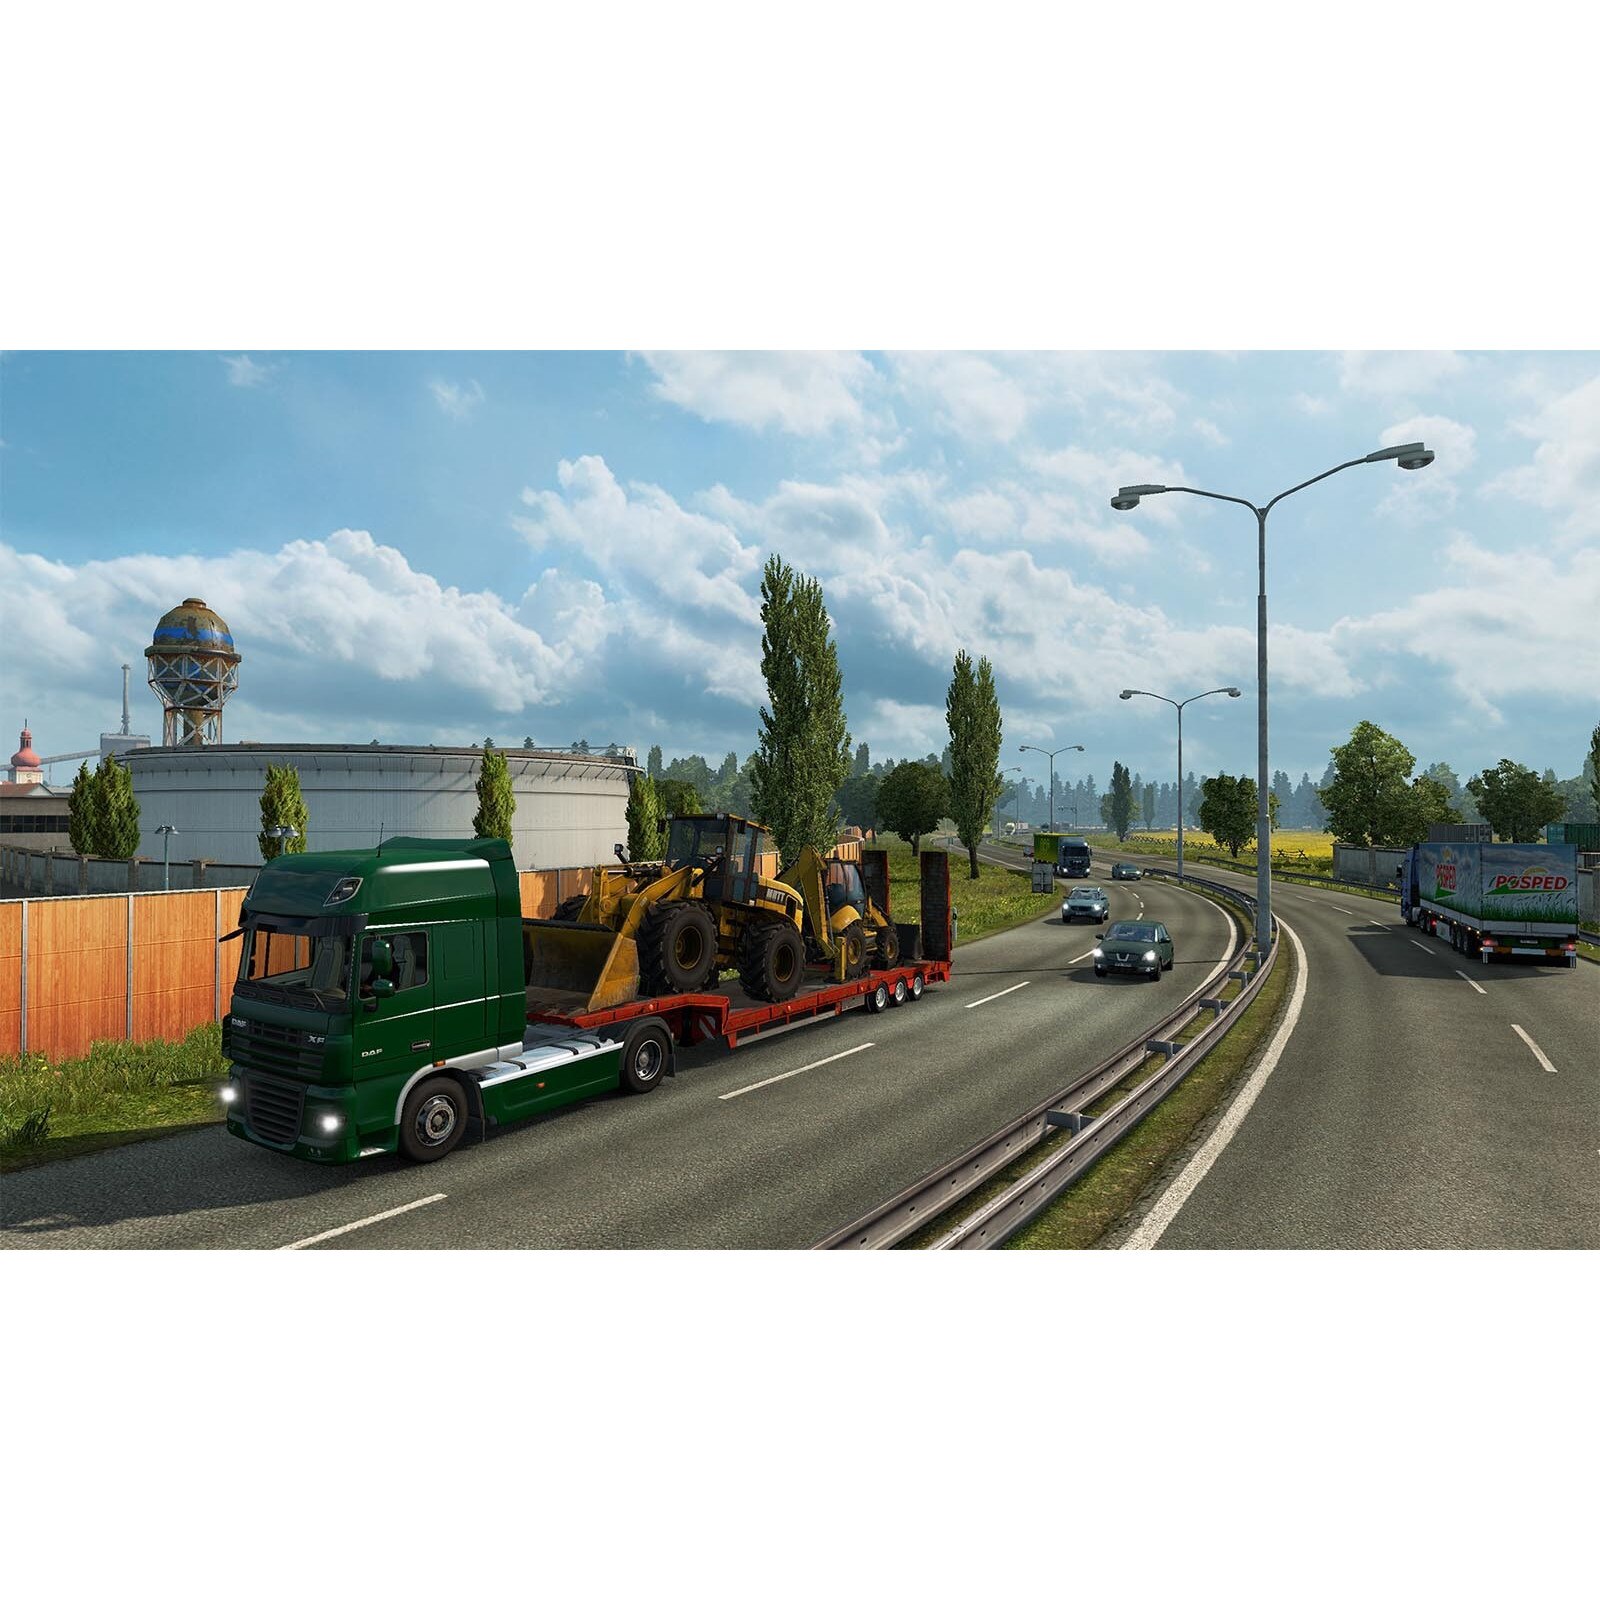 Joc Euro Truck 2 : ITALIA (ADD-ON) pentru PC (Cod activare Steam) -